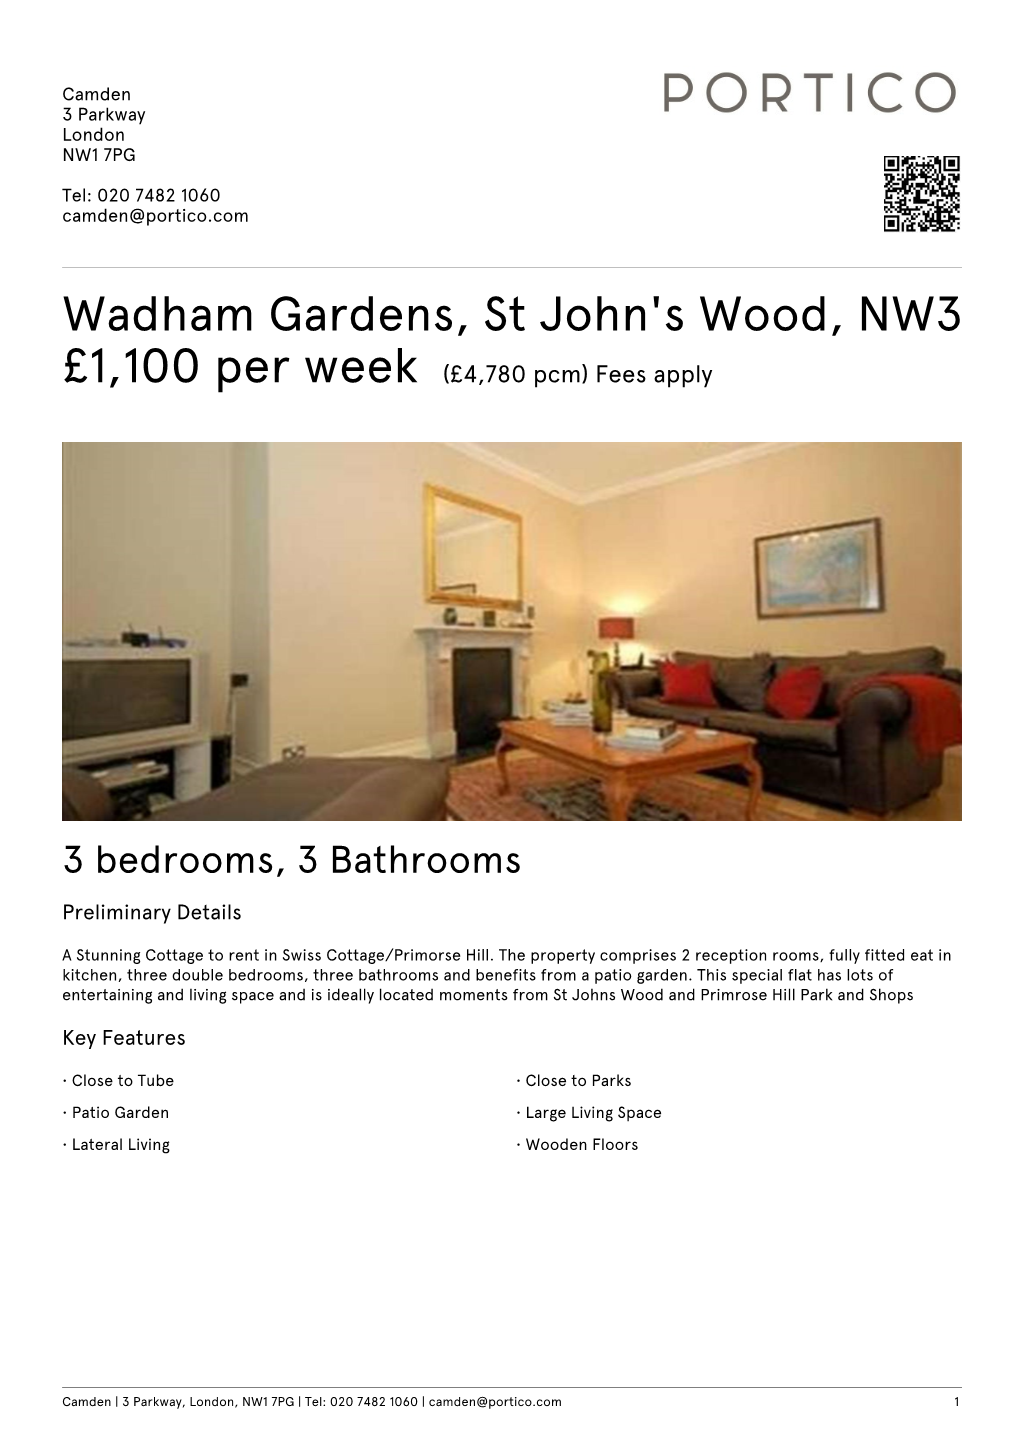 Wadham Gardens, St John's Wood, NW3